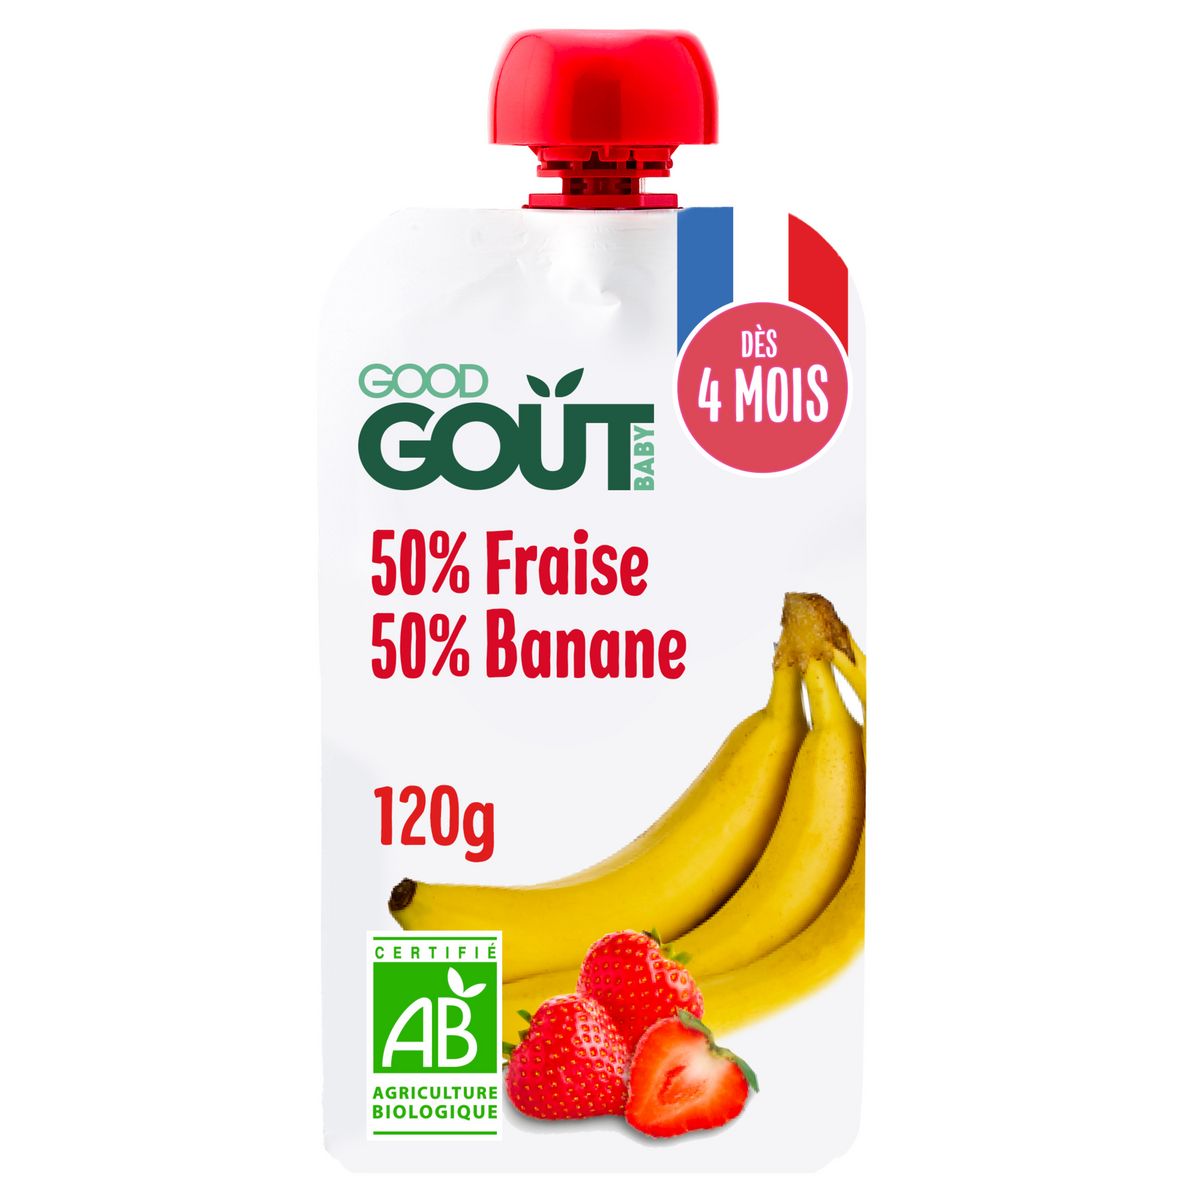 GOOD GOUT BABY Gourde 50% fraise 50% banane bio dès 4 mois 120g